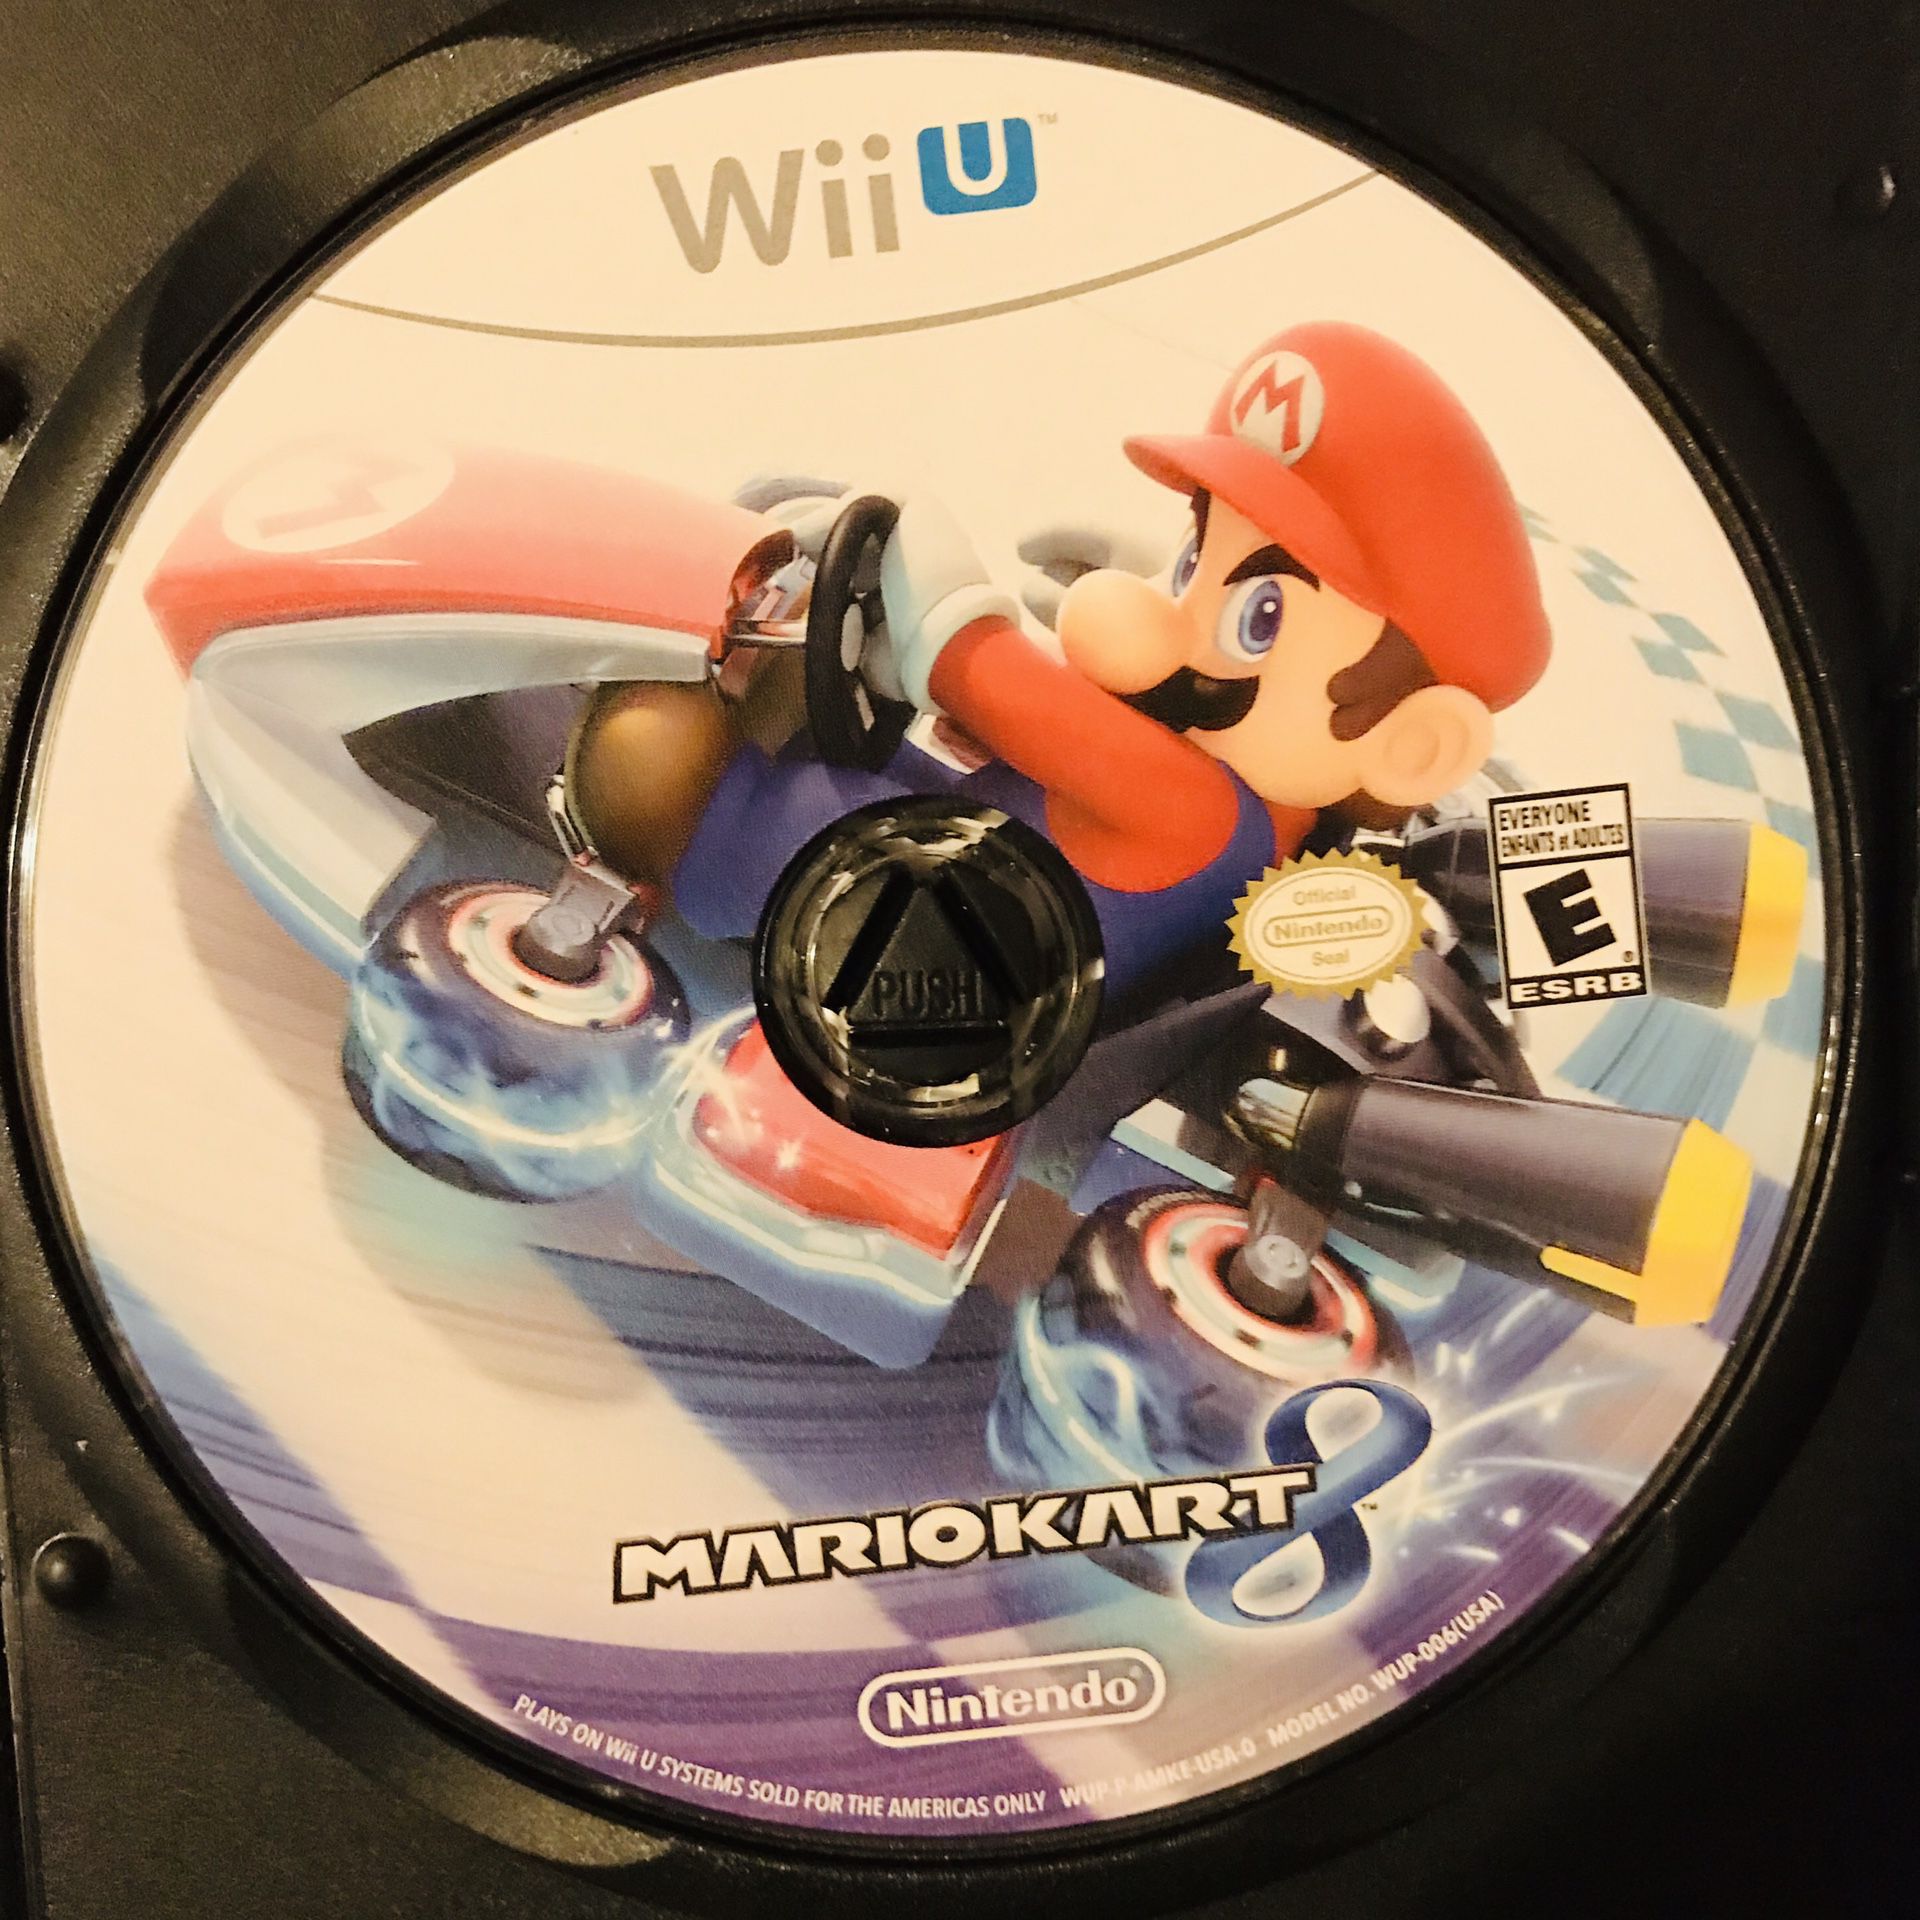 MarioKart Wii U